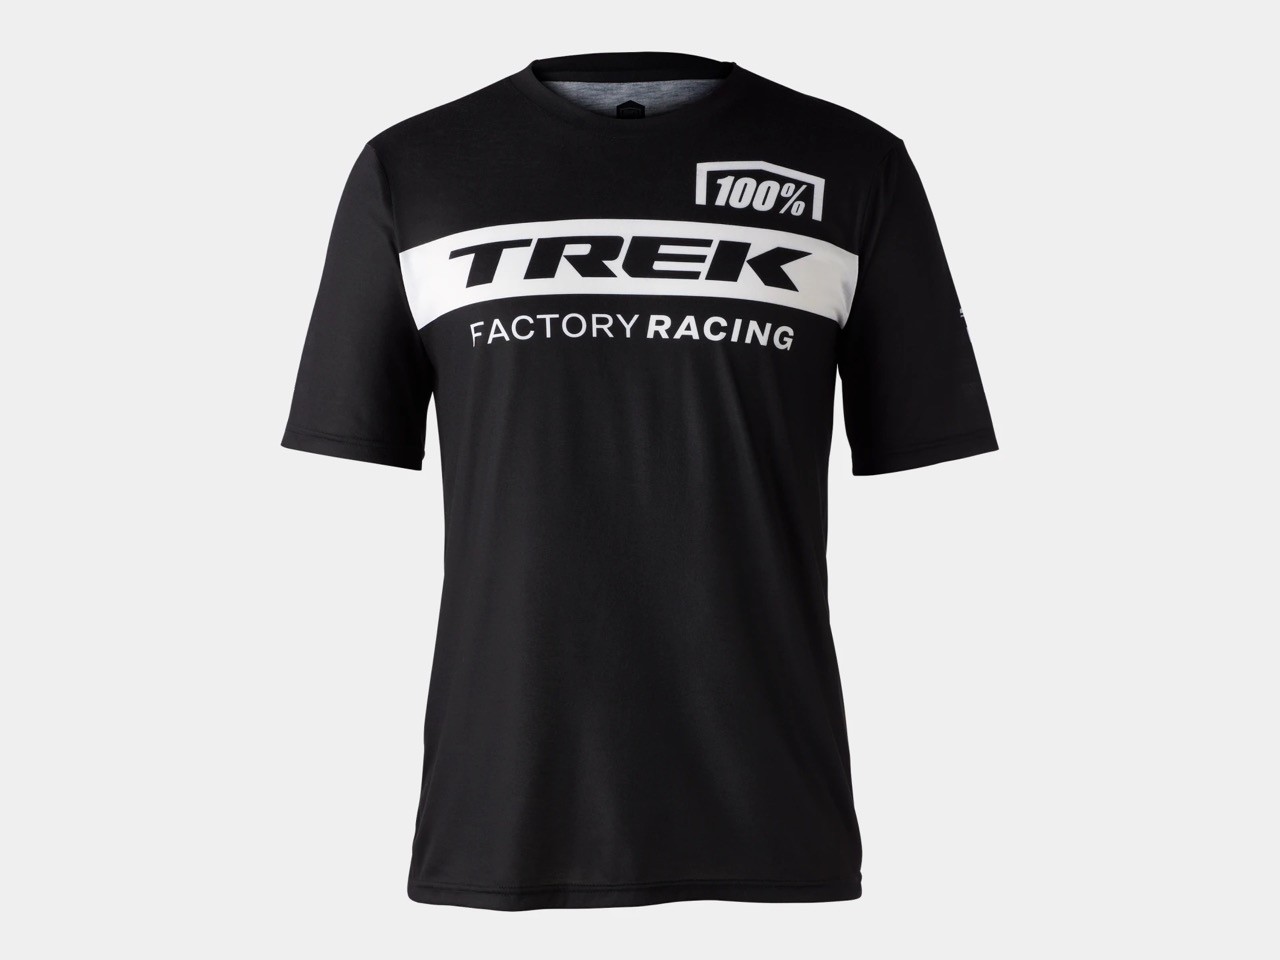 Triko Funkční s krátkými rukávy 100% Trek Factory Racing